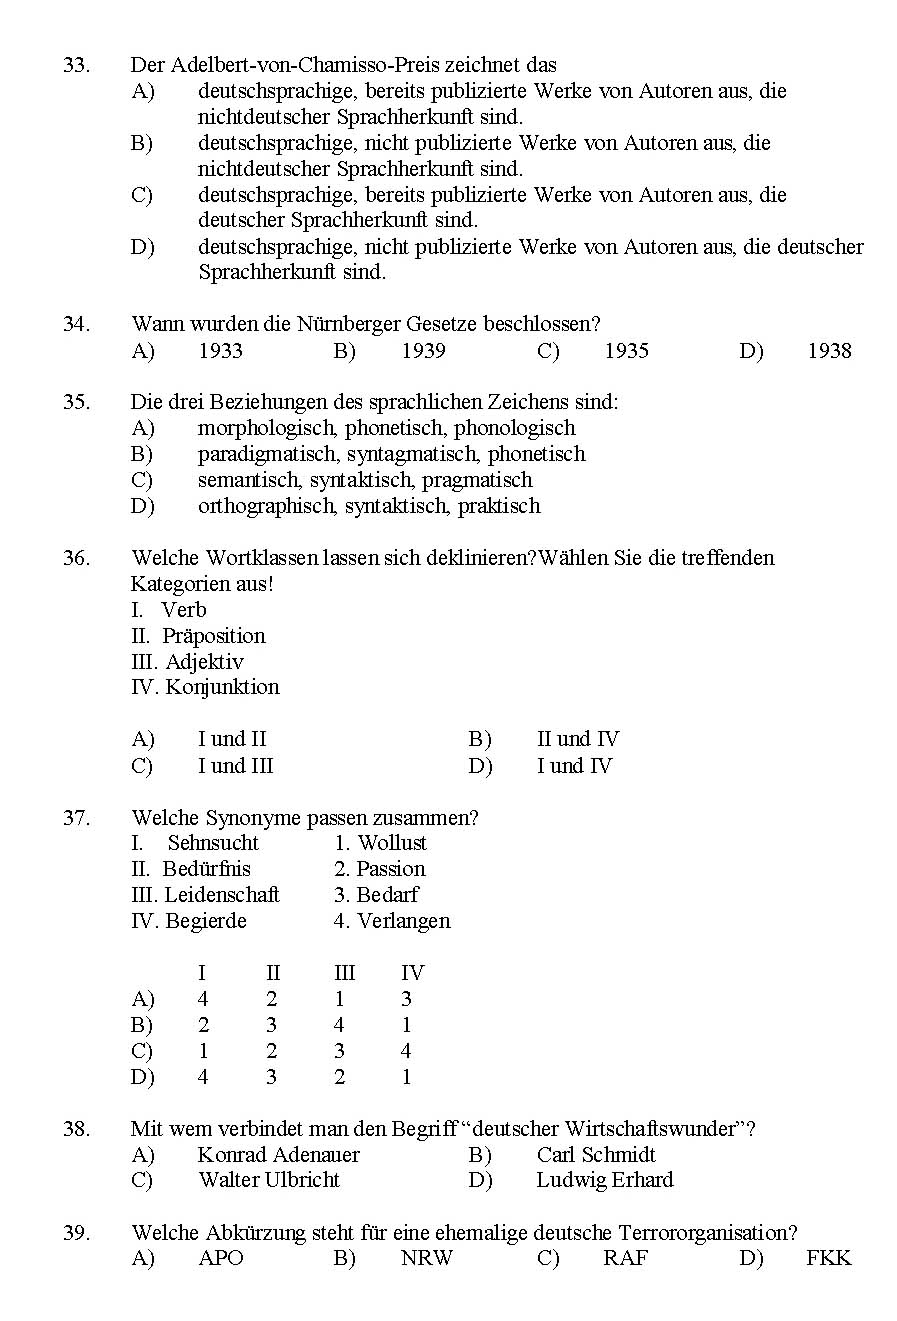 Kerala SET German Exam 2016 Question Code 16112 A 5